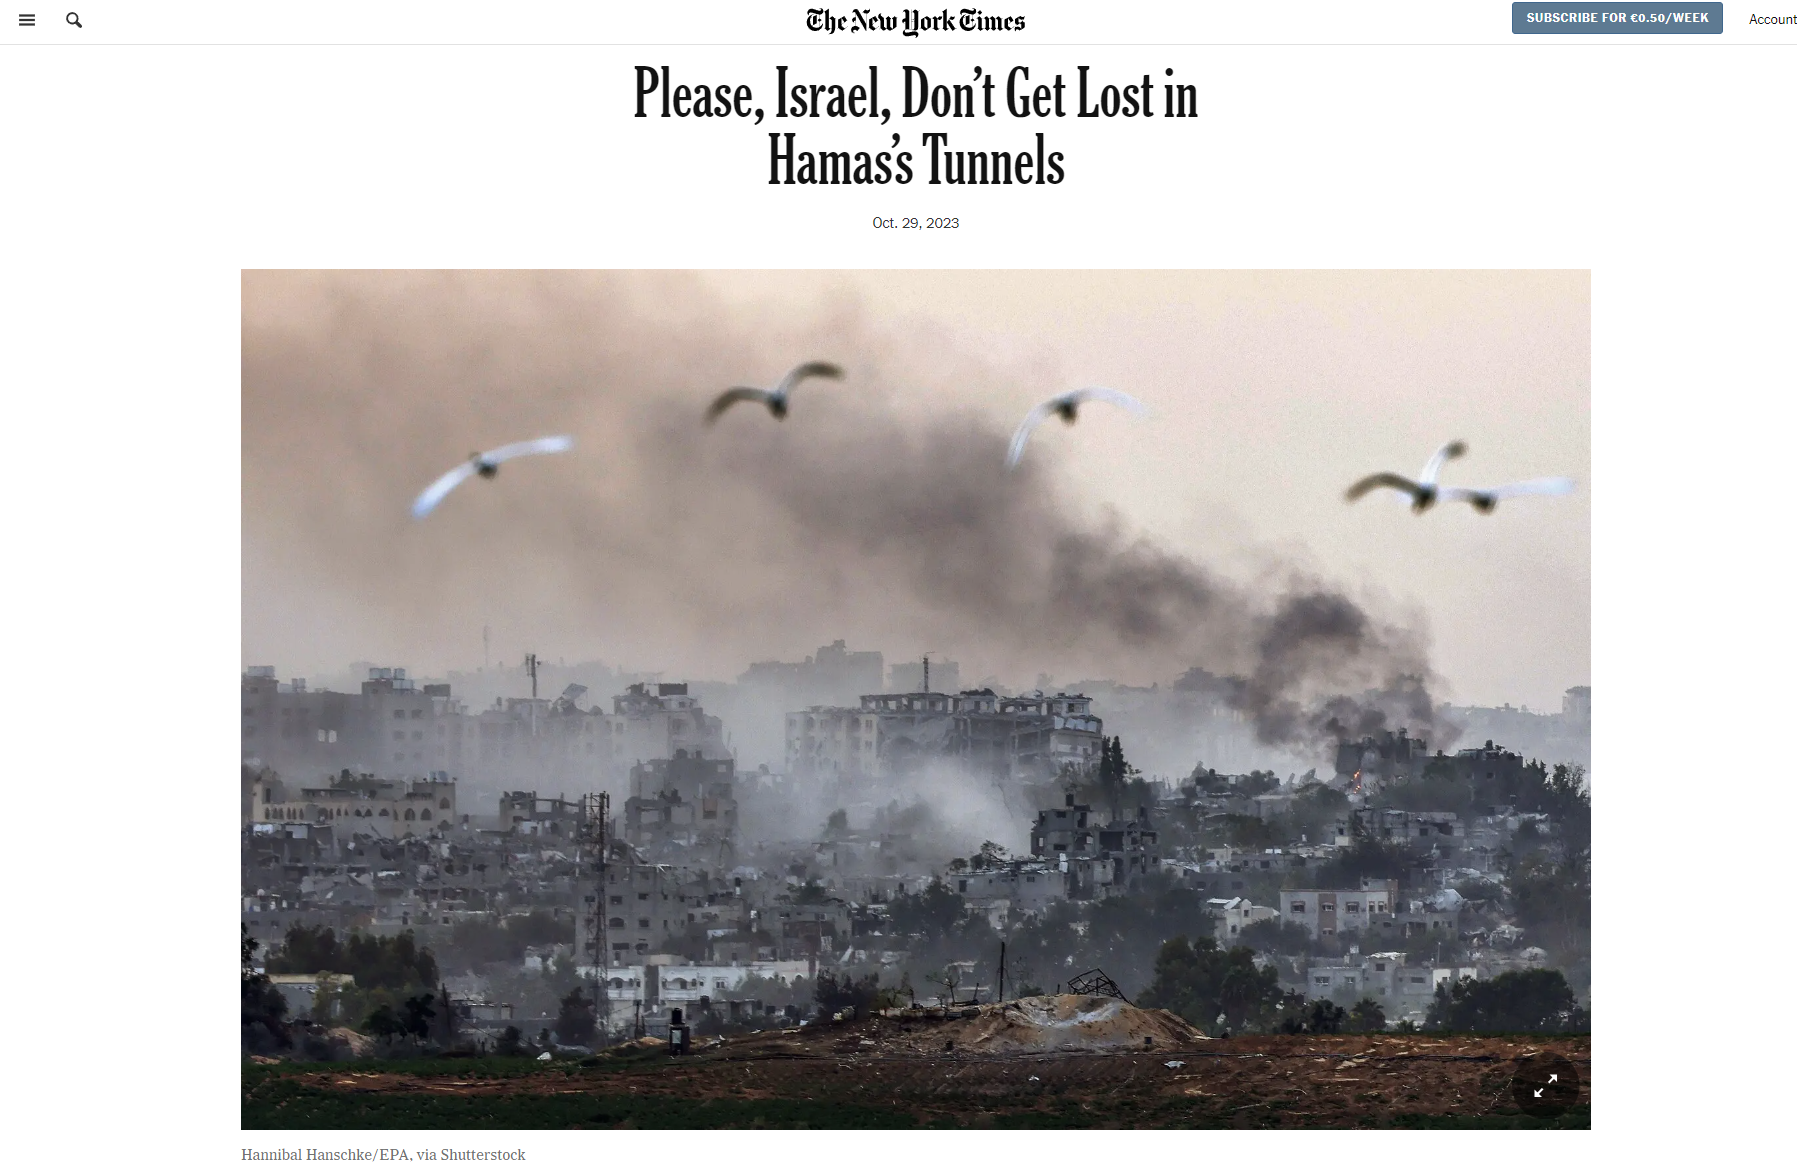 Έκκληση του Τόμας Φρίντμαν προς το Ισραήλ στους New York Times! Παρακαλώ μην χαθείτε στα τούνελ της Χαμάς – Το παράδειγμα της Ινδίας